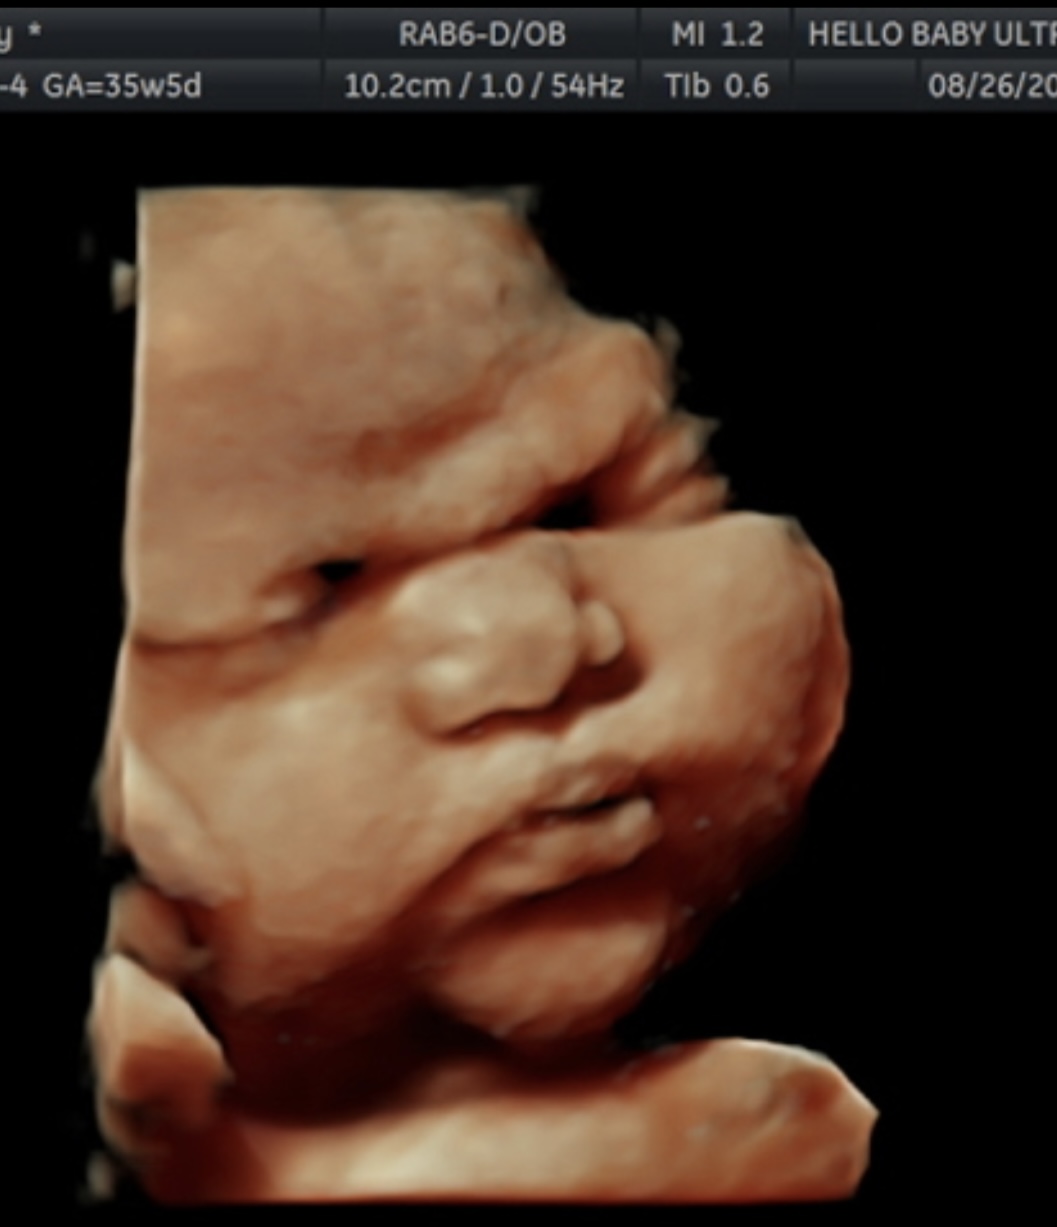 HD ultrasound photo